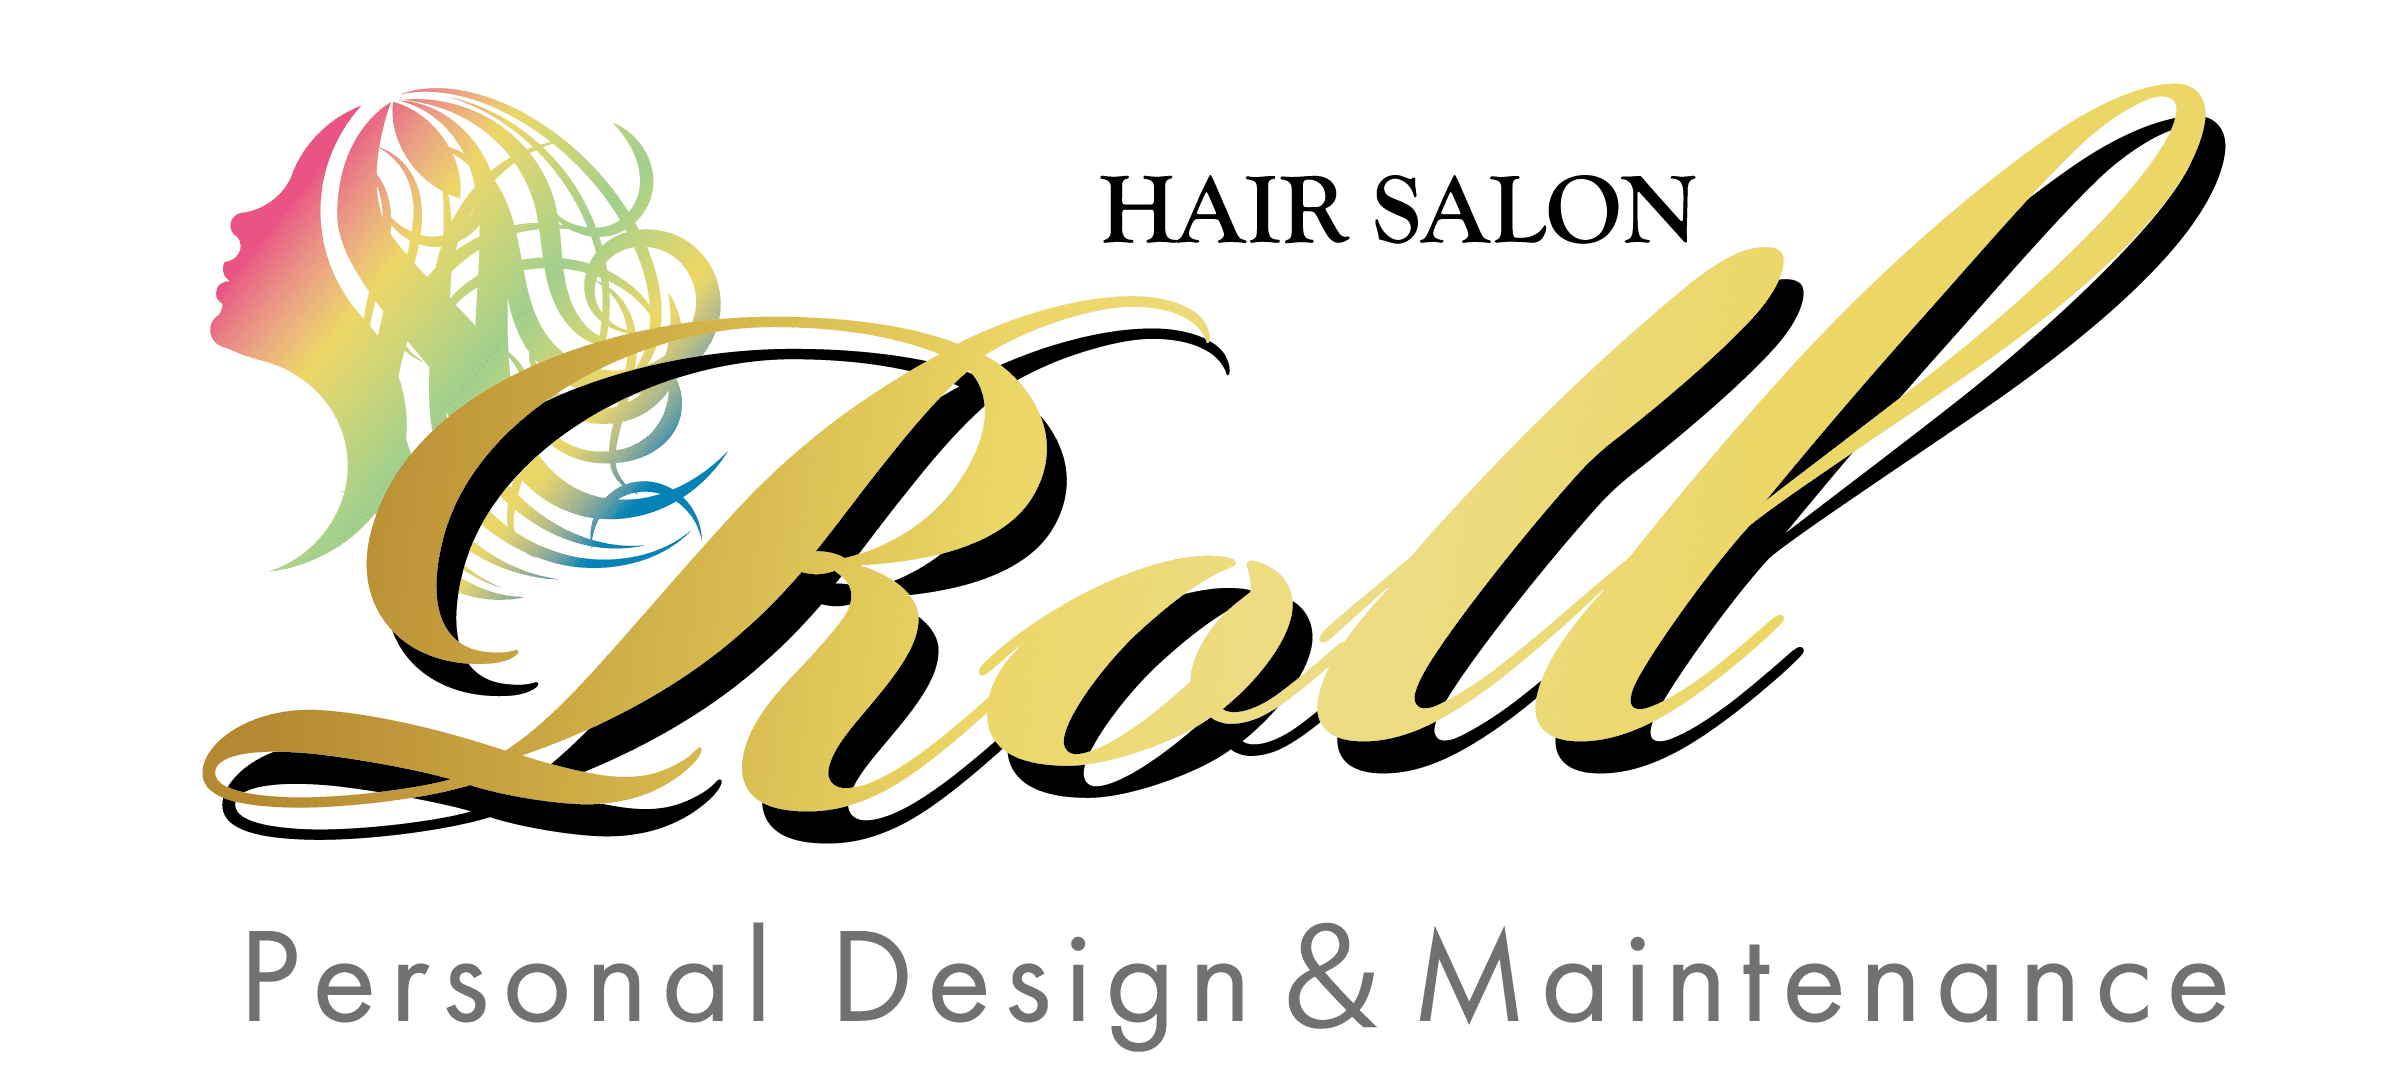 Hair Salon ROLL